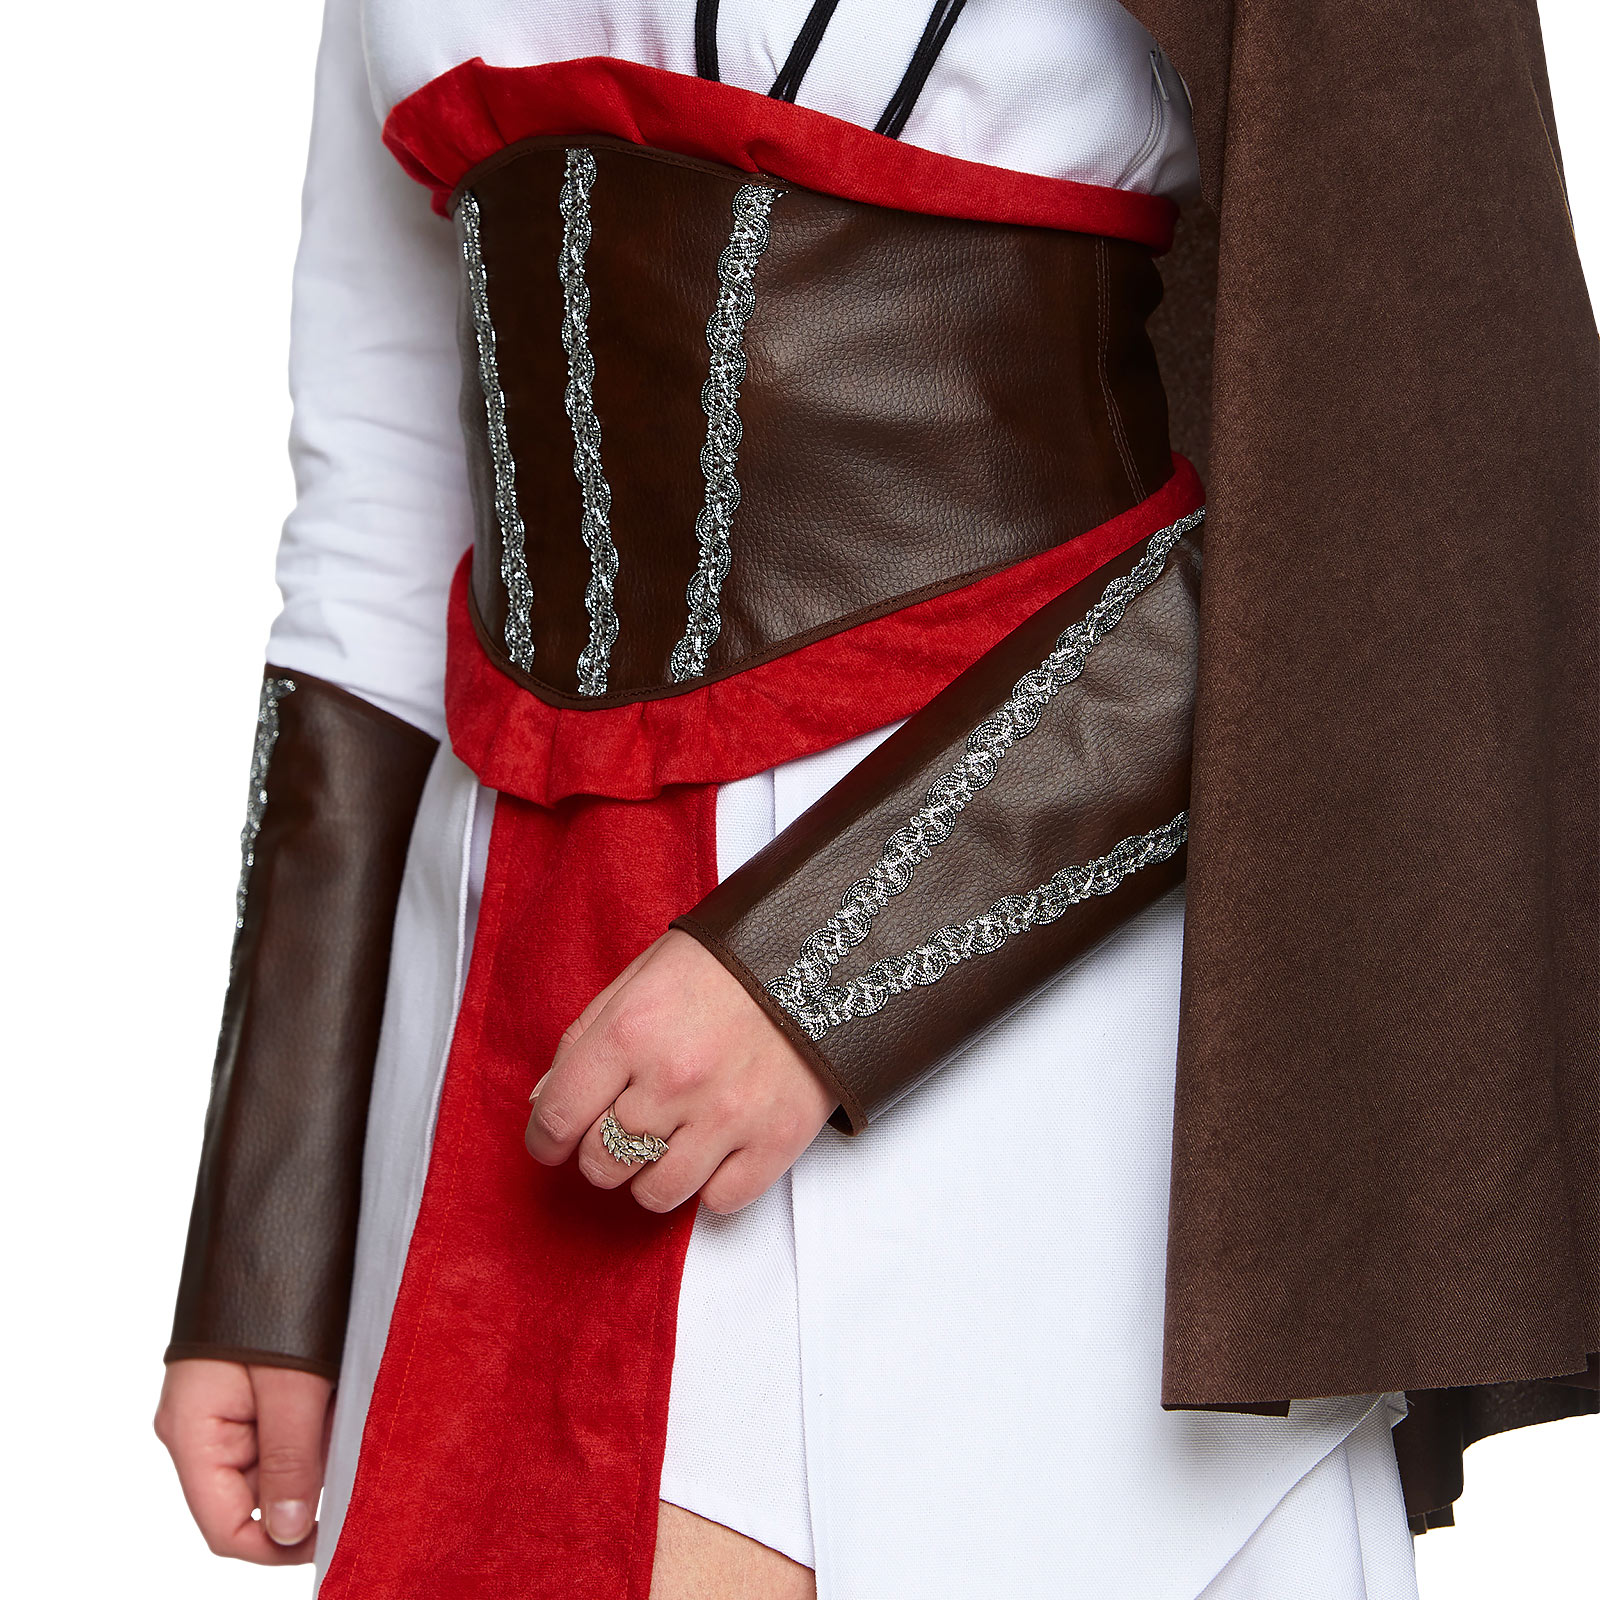 Assassin Kostuum voor Vrouwen voor Assassin's Creed Fans